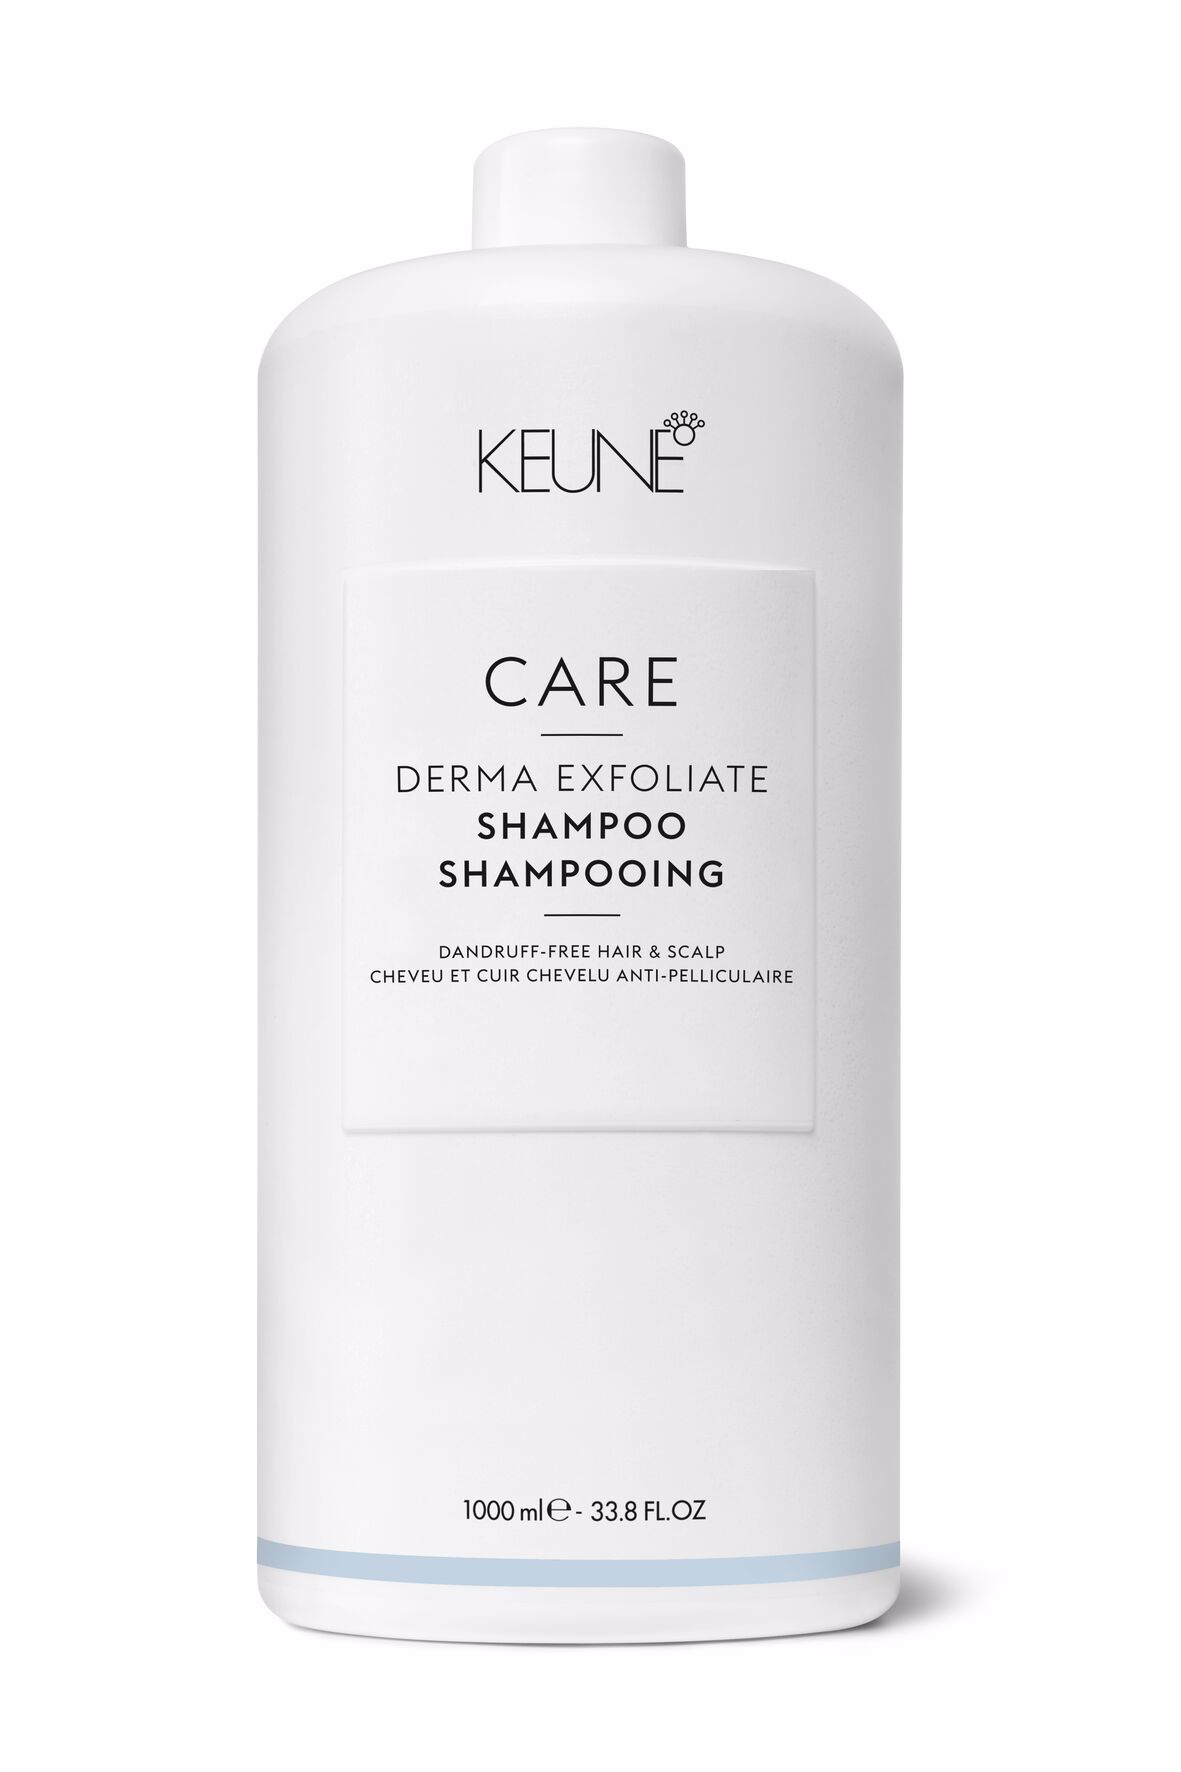 Entdecke unser Derma Exfoliate Shampoo ohne Silikone, das Schuppen bekämpft. Beruhigt die Kopfhaut, beseitigt sichtbare Schuppen und fördert gesundes Haar. Jetzt auf keune.ch ausprobieren!